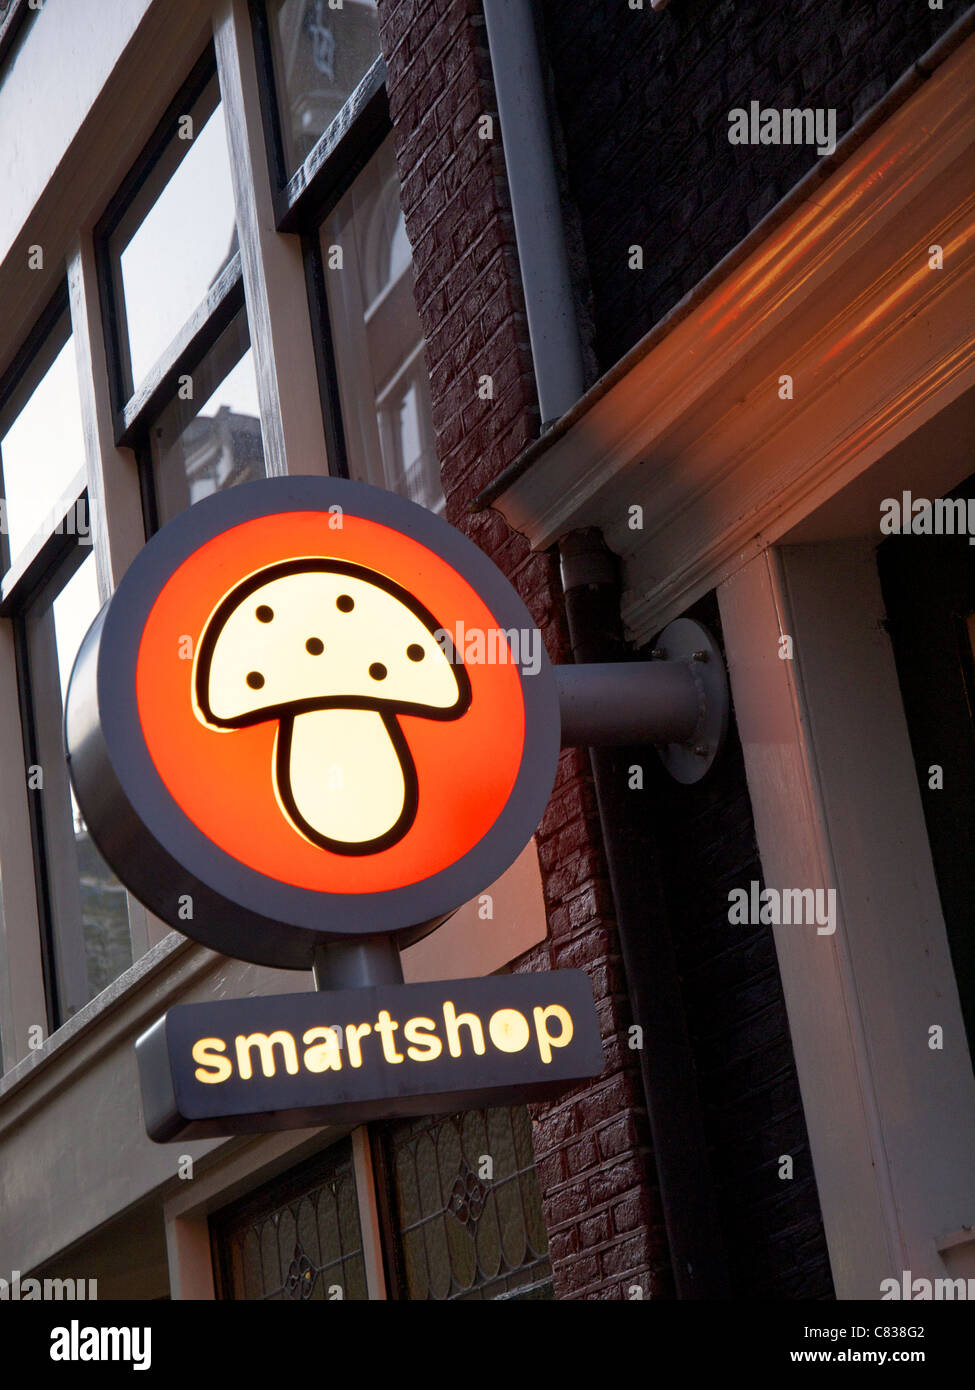 Illuminated smartshop sign with magic mushroom, Amsterdam the Netherlands Stock Photo